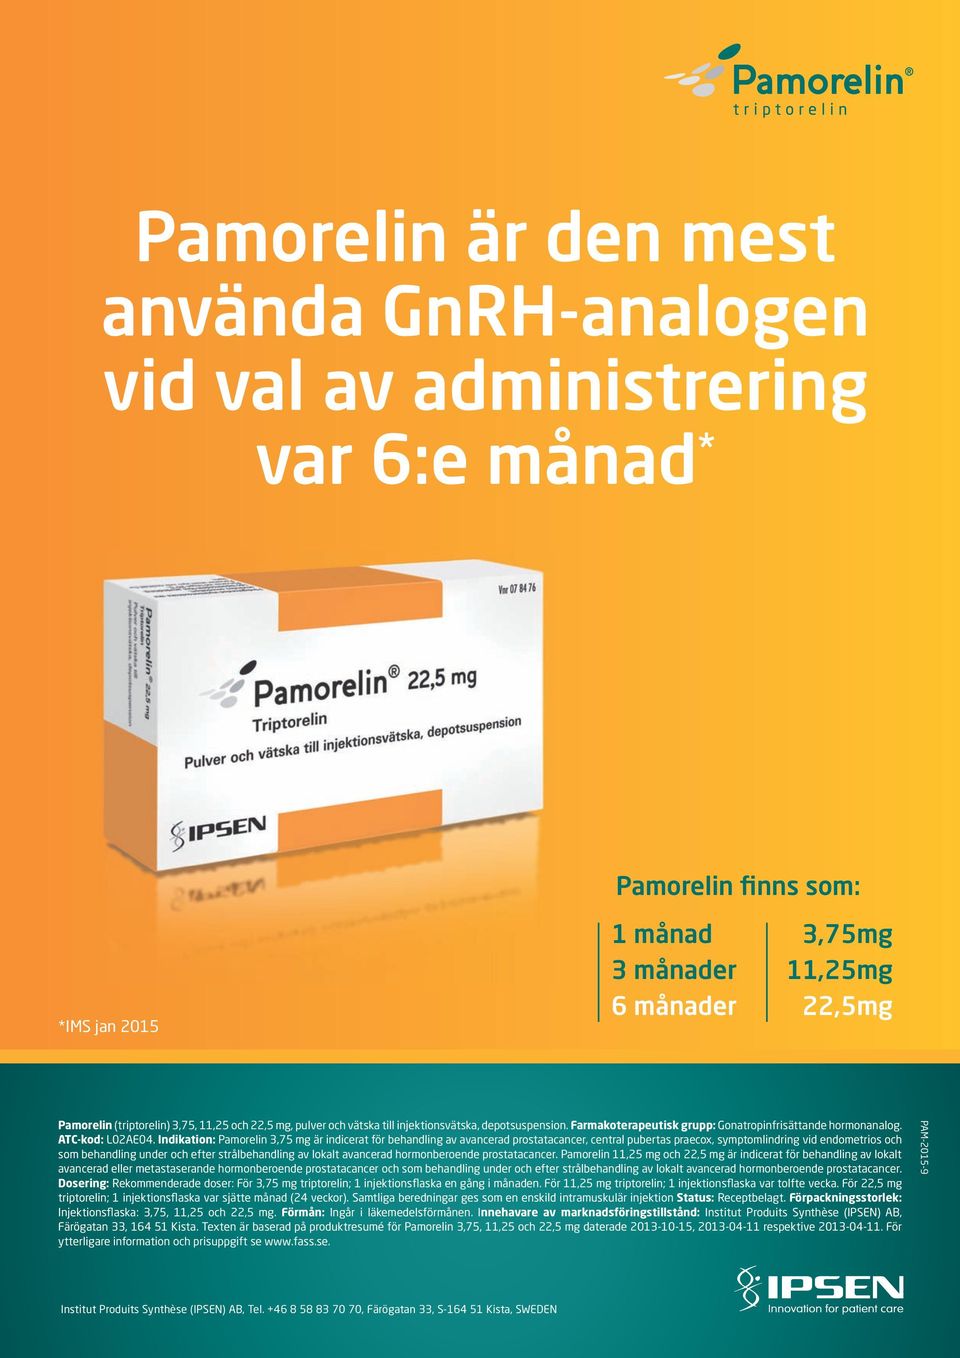 Indikation: Pamorelin 3,75 mg är indicerat för behandling av avancerad prostatacancer, central pubertas praecox, symptomlindring vid endometrios och som behandling under och efter strålbehandling av